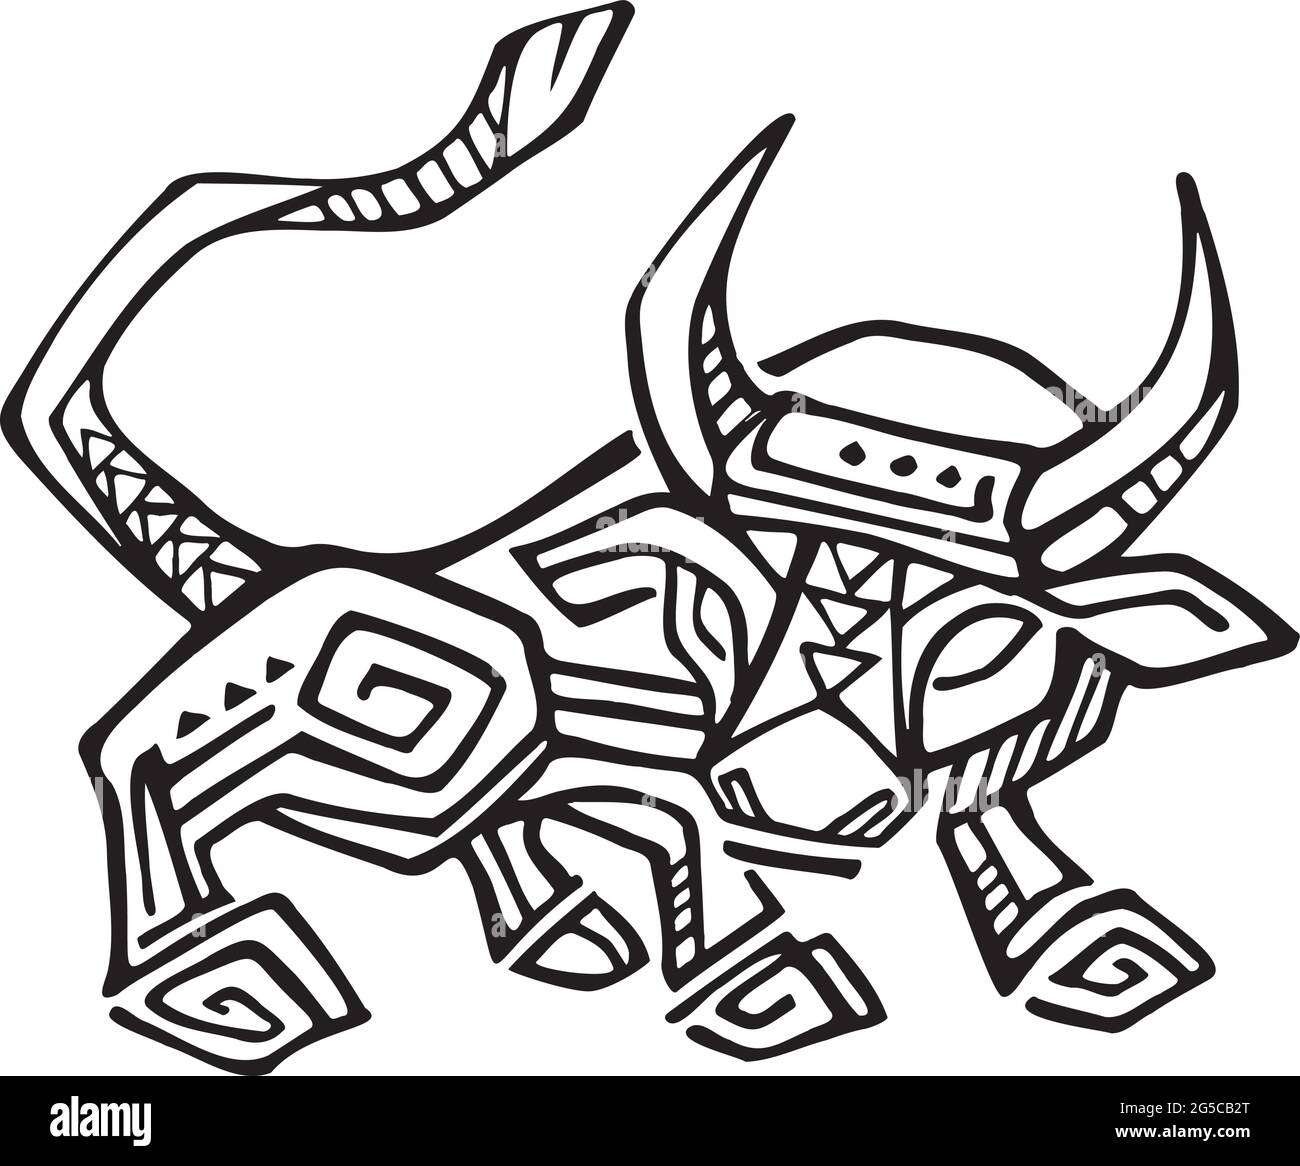 Handgezeichnete Vektordarstellung oder Zeichnung eines mexikanischen einheimischen Stiers Stock Vektor